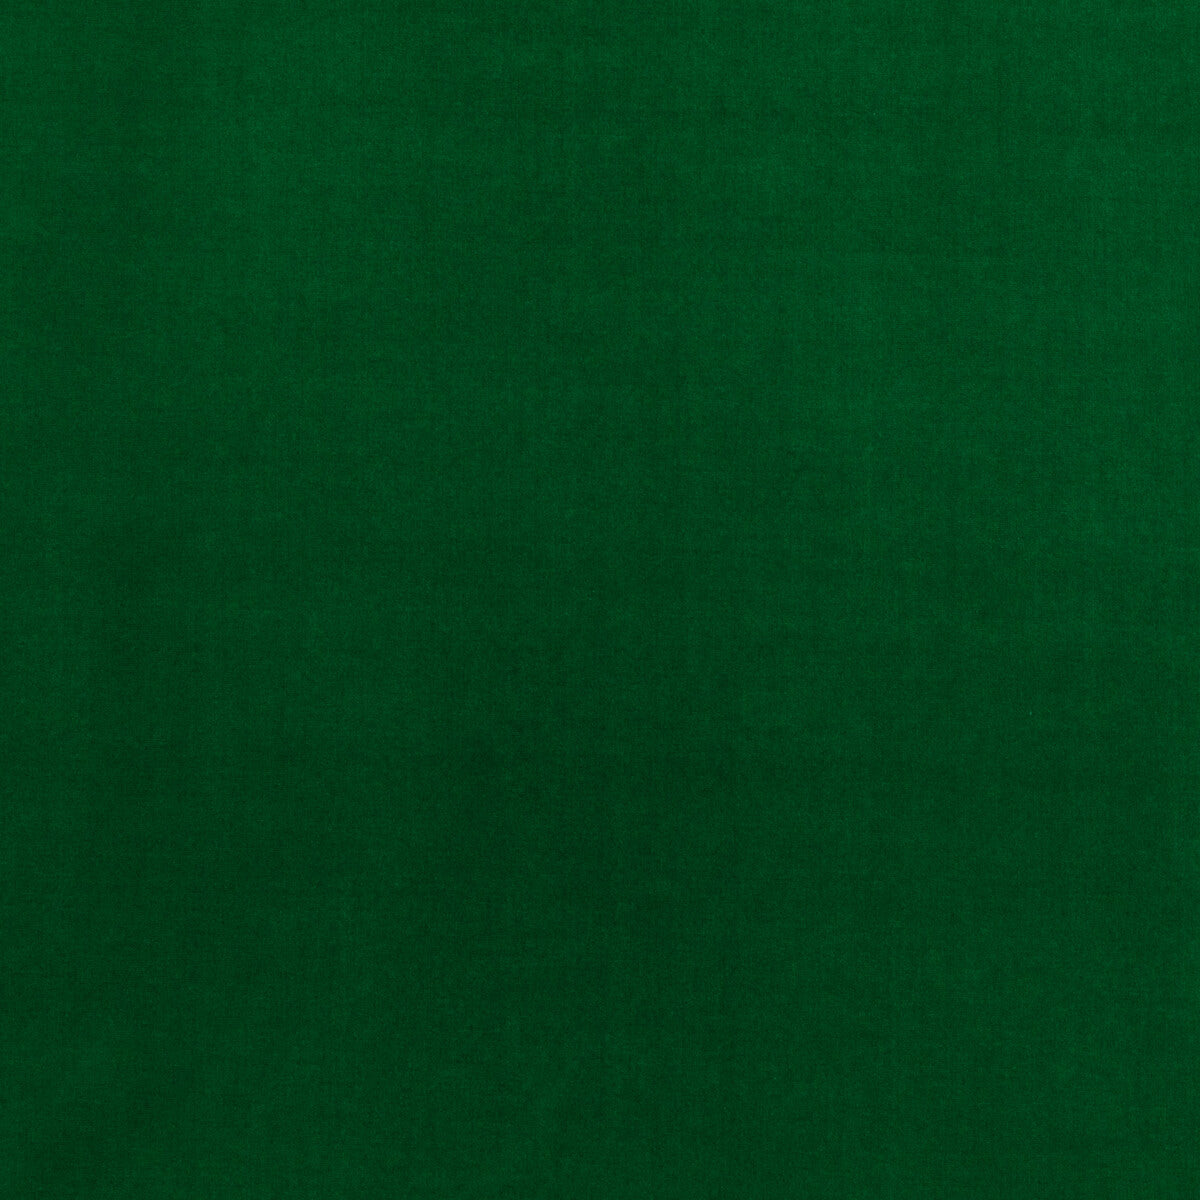 Baker House Velvet fabric in emerald color - pattern BF10838.785.0 - by G P &amp; J Baker in the Baker House Velvet collection